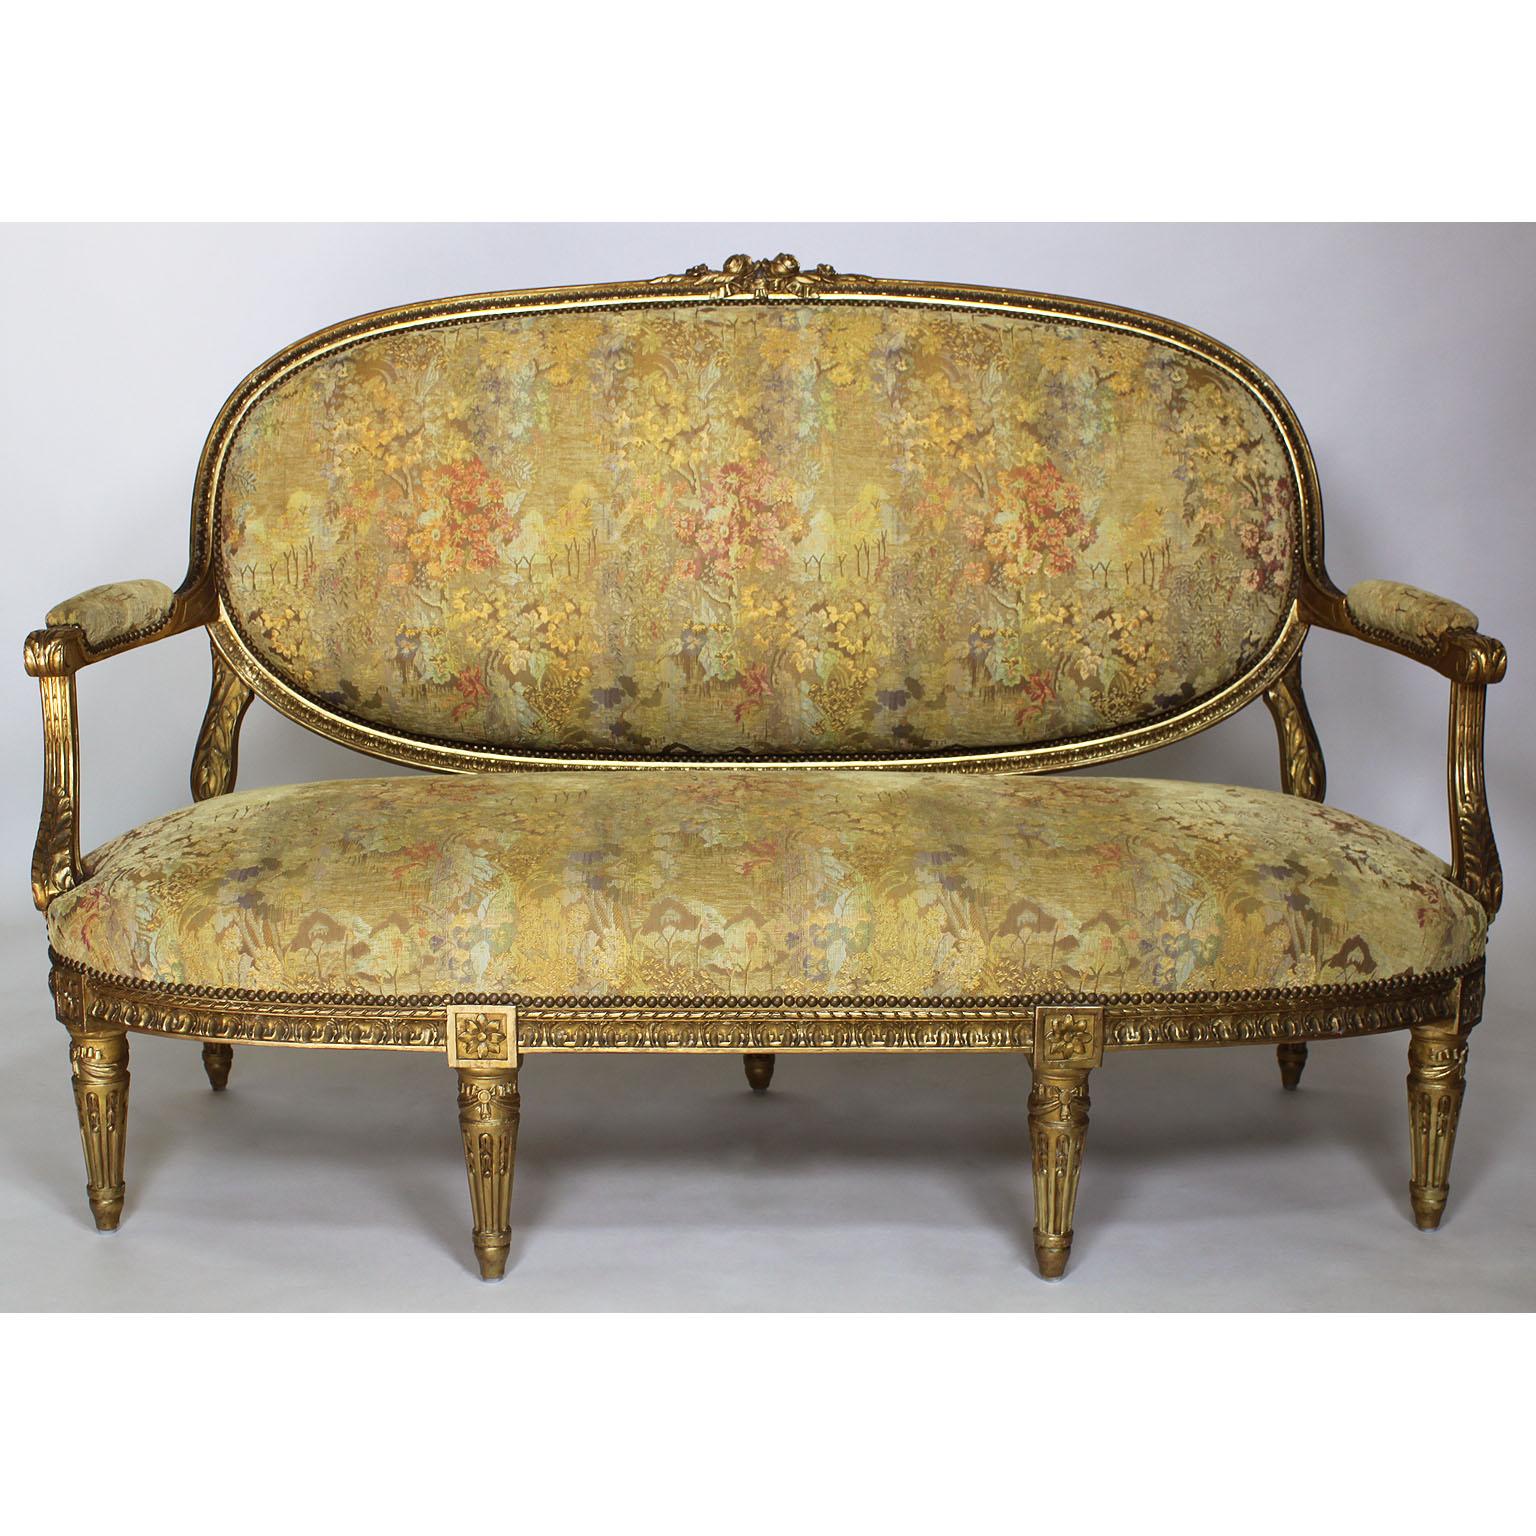 Très bel ensemble de salon français du XIXe siècle de style Louis XVI en bois doré sculpté, composé d'un canapé et de quatre fauteuils, tous recouverts d'une tapisserie d'ameublement récente. Les cadres finement sculptés avec un dossier à panneaux,